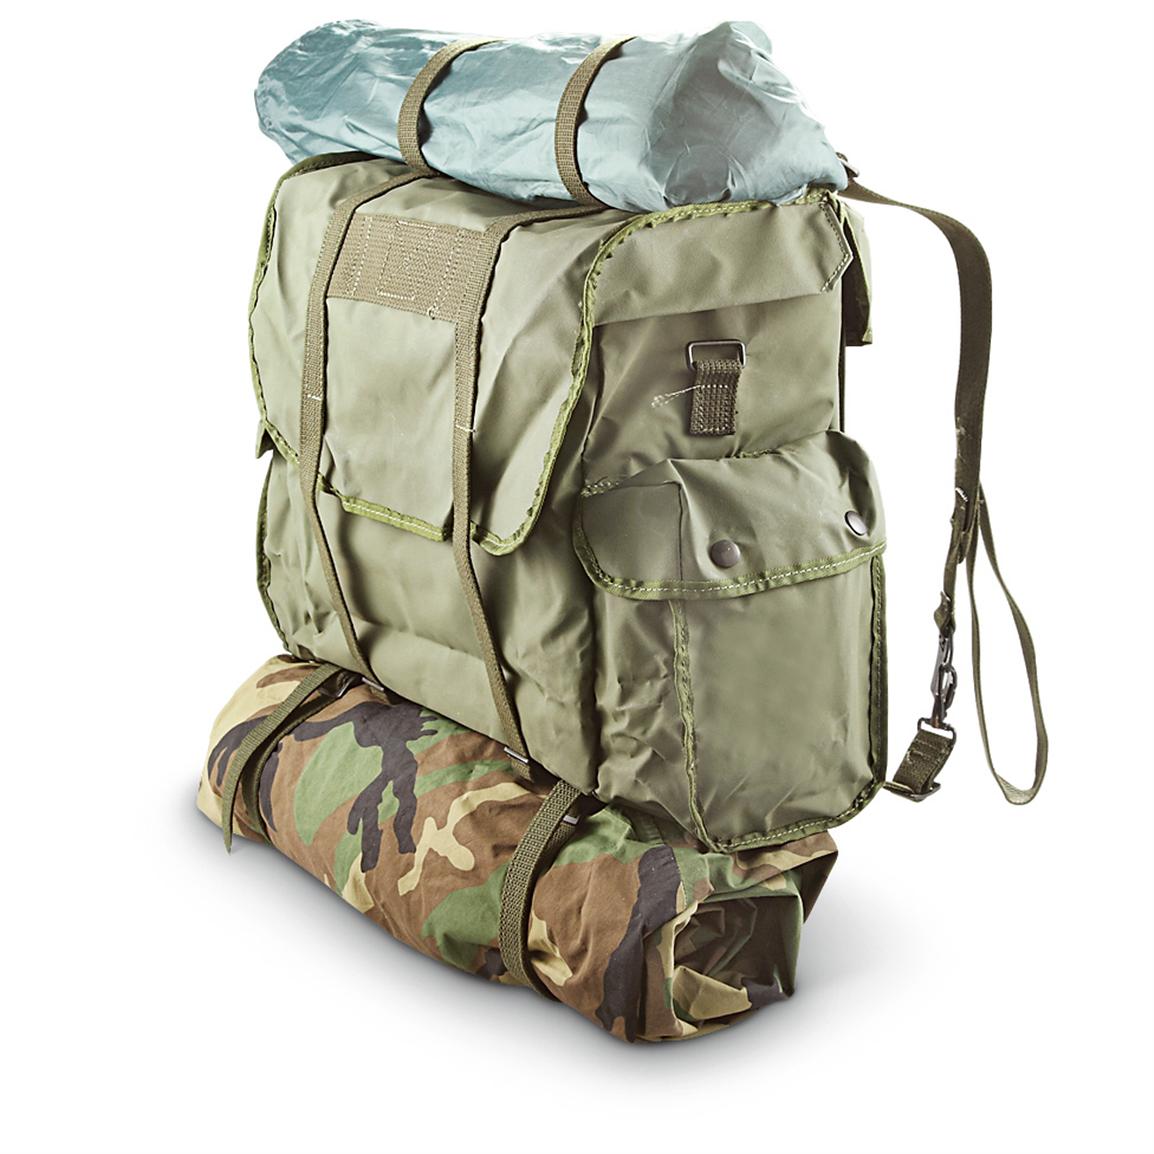 Belgian Army Surplus Waterproof Backpack Rucksack Daypack PVC Nylon 25L Hiking 